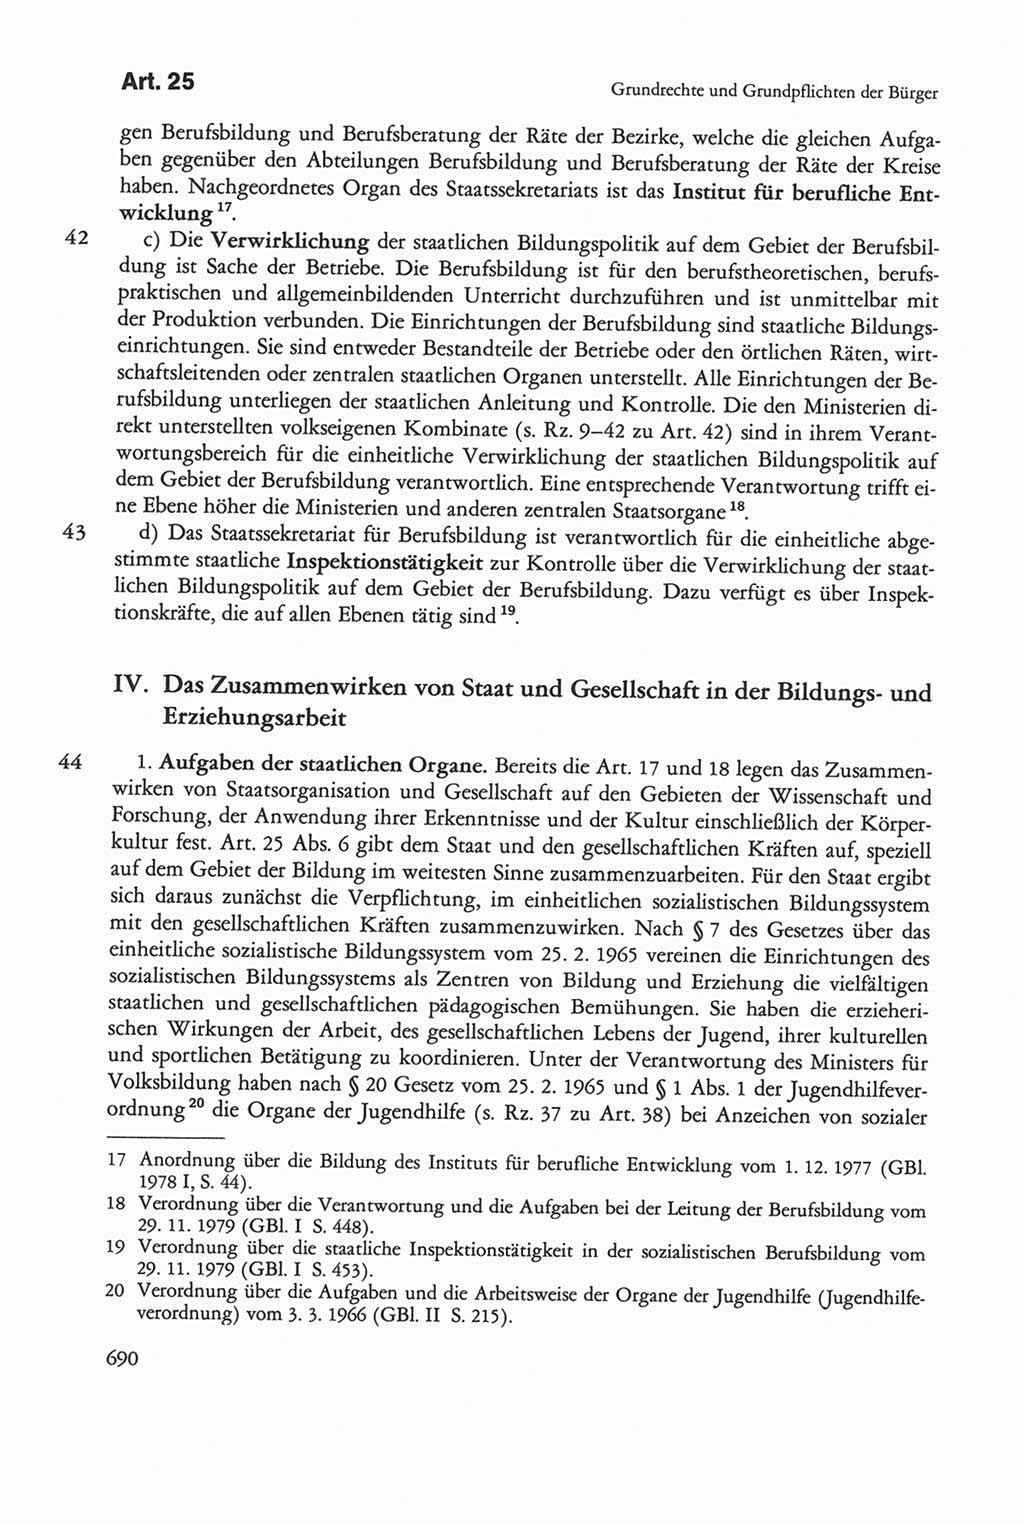 Die sozialistische Verfassung der Deutschen Demokratischen Republik (DDR), Kommentar 1982, Seite 690 (Soz. Verf. DDR Komm. 1982, S. 690)